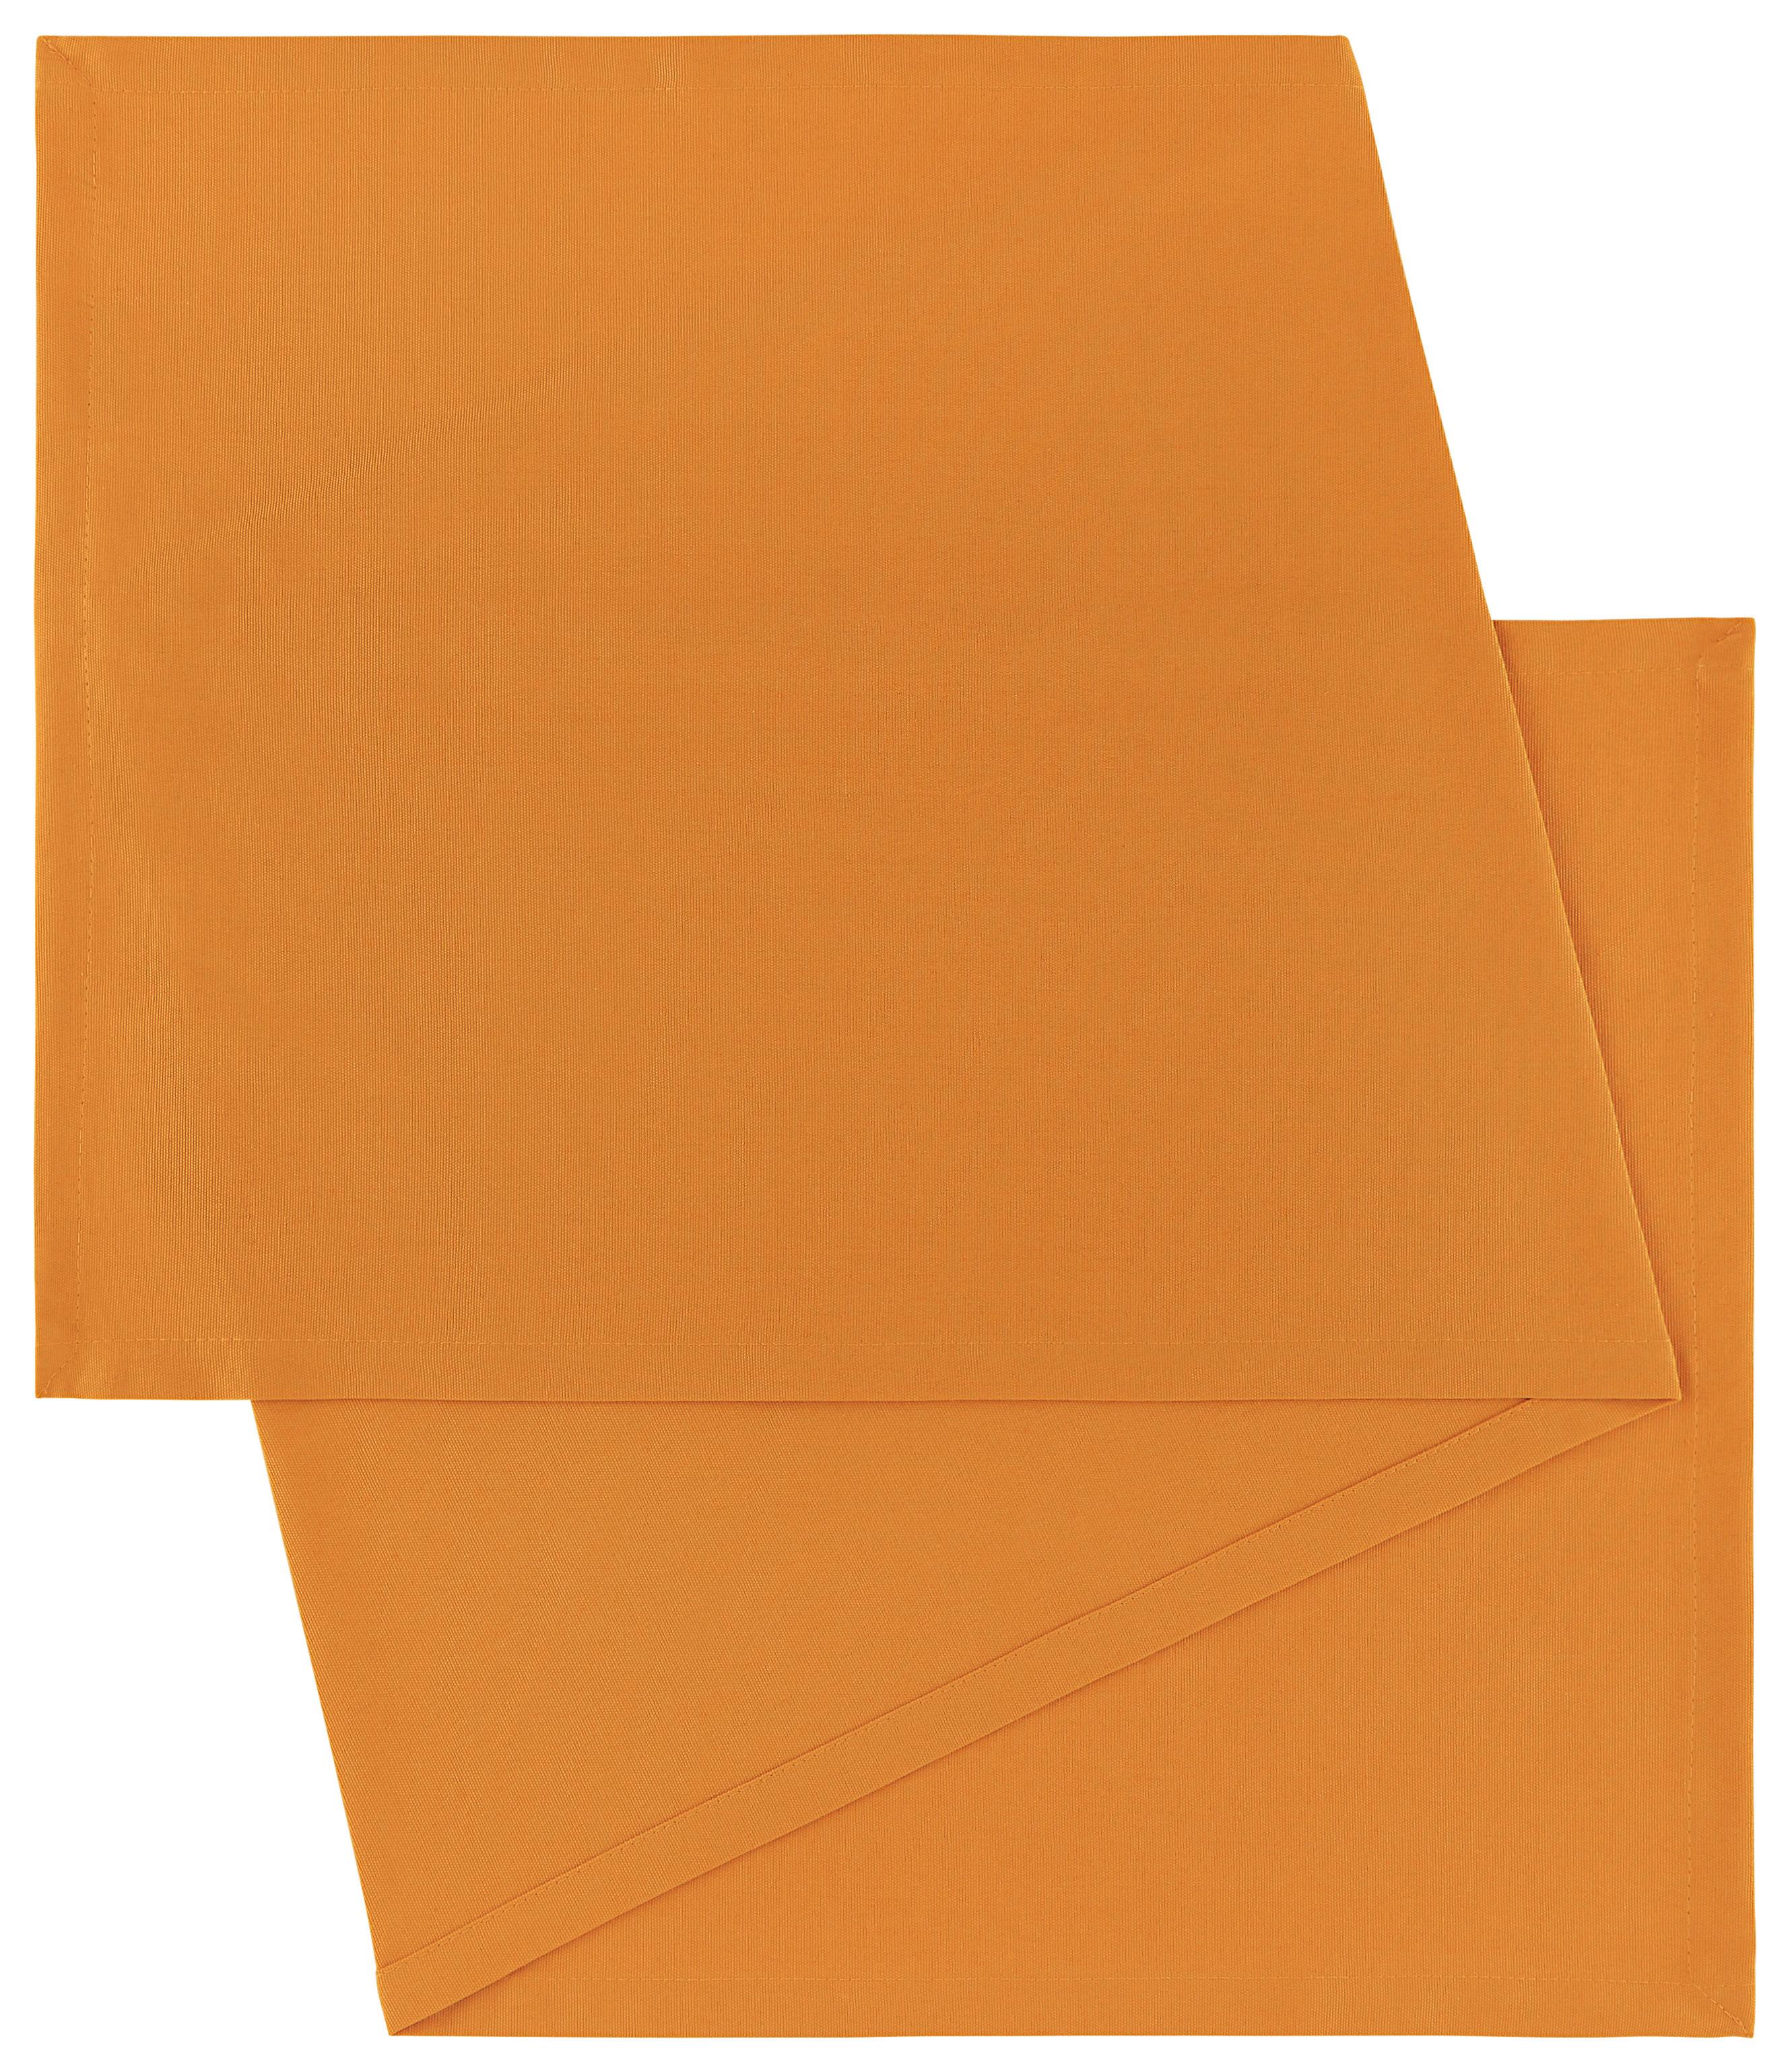 Traversă de masă Steffi - portocaliu, textil (45/150cm) - Modern Living